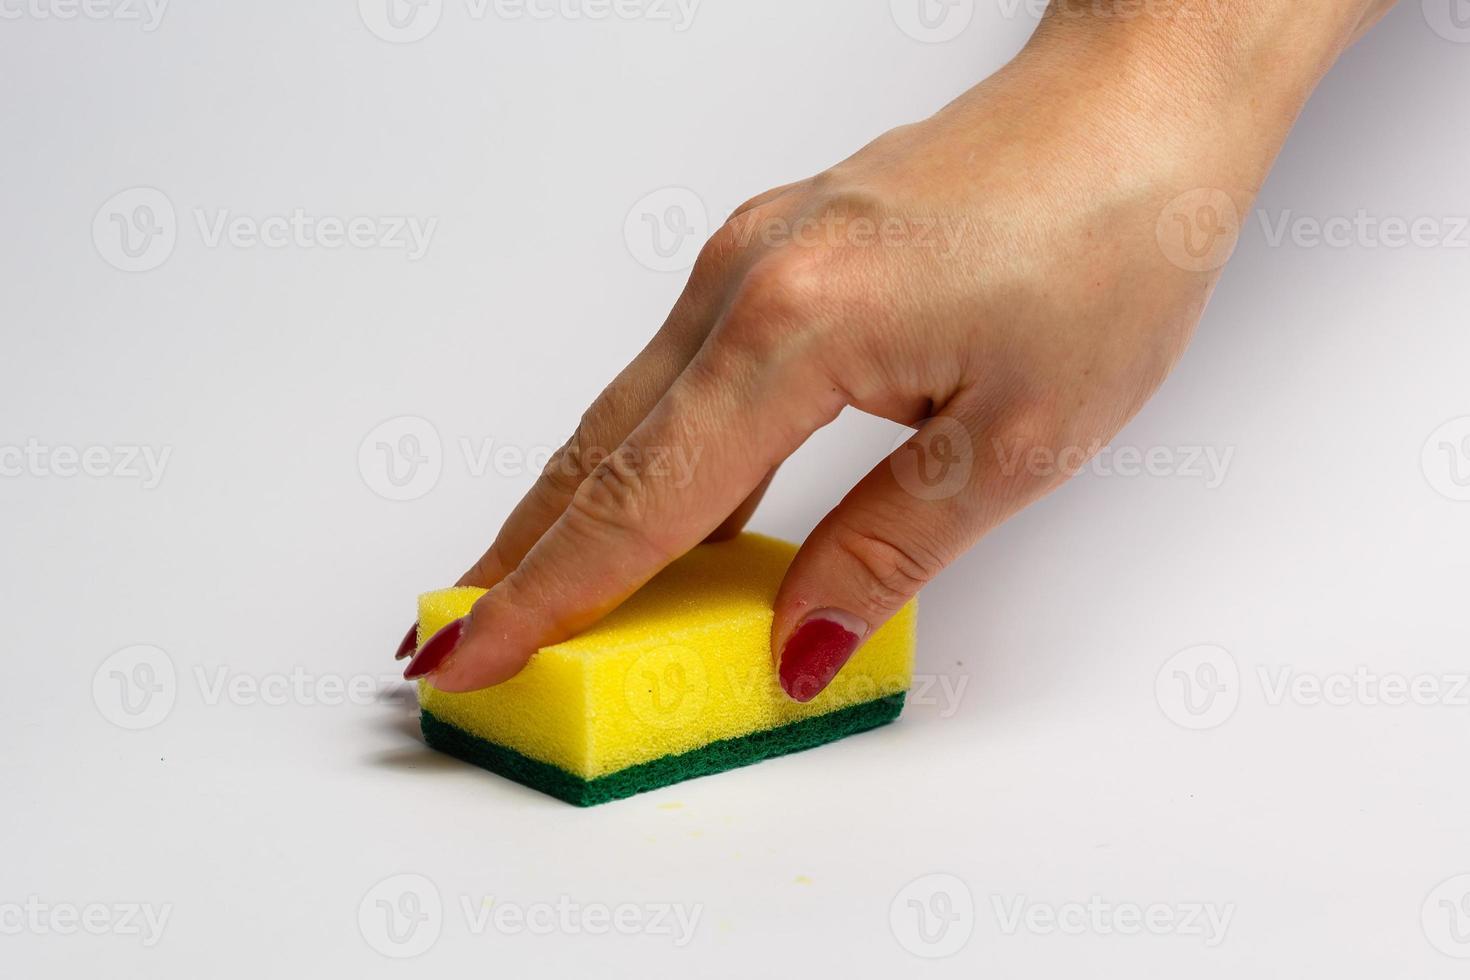 mano de mujer sosteniendo una esponja de limpieza aislada en un fondo blanco foto